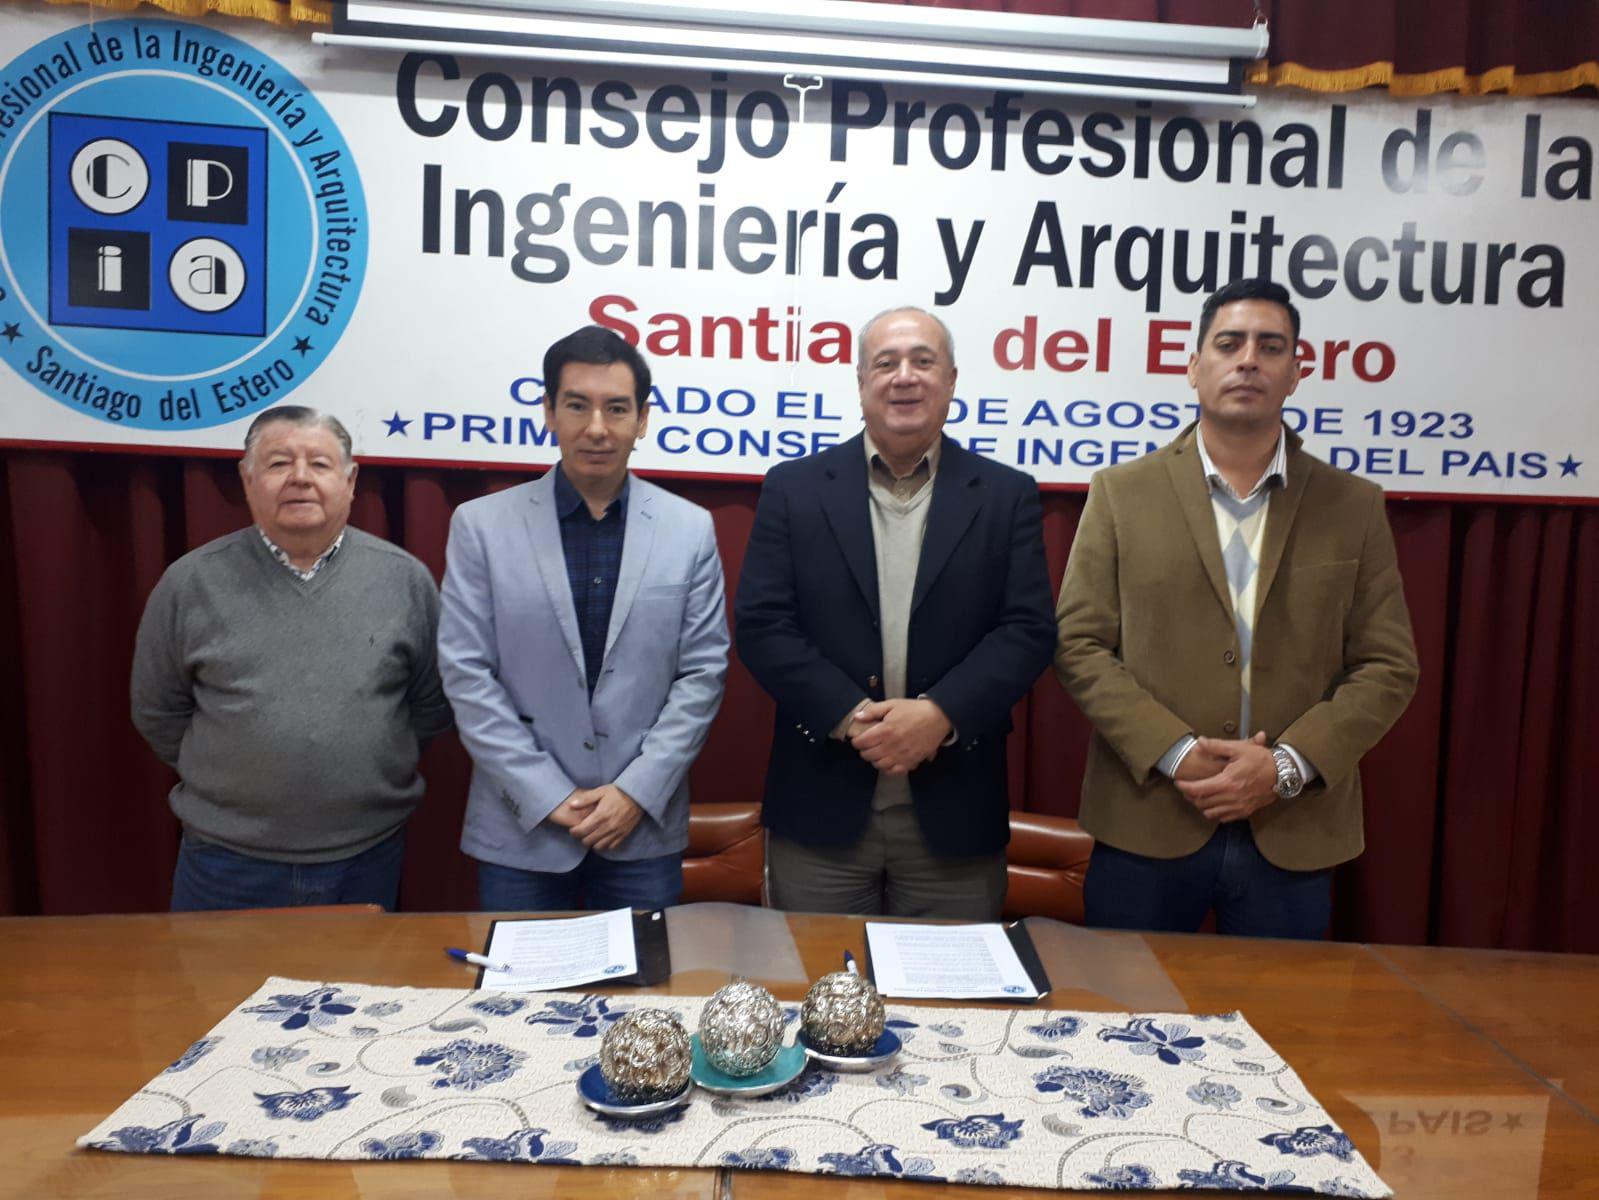 Firma de convenio entre el Colegio de Corredores Puacuteblicos Inmobiliarios y el Consejo Profesional de la Ingenieriacutea y Arquitectura